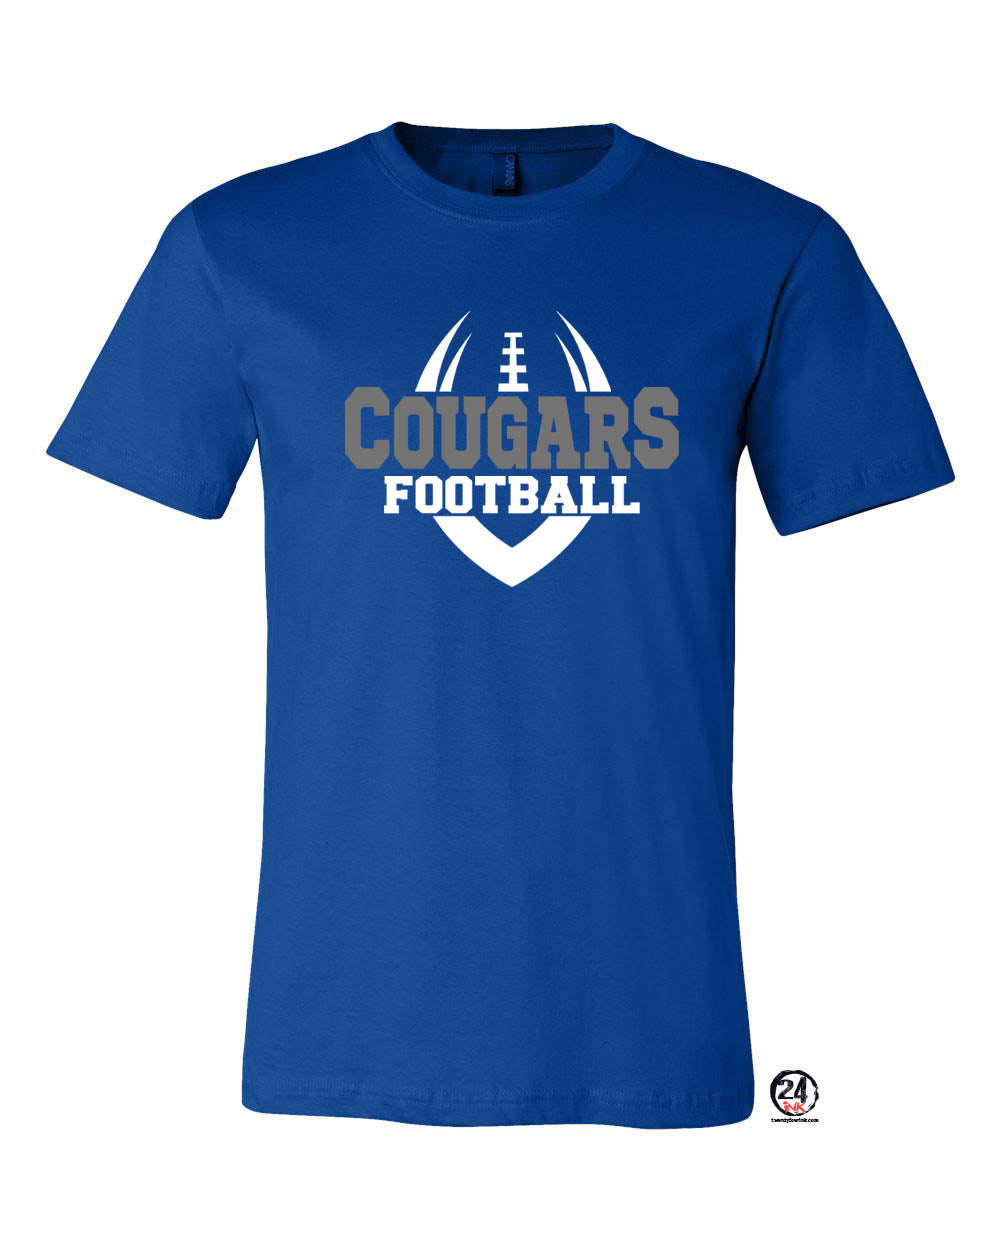 football t shirt design